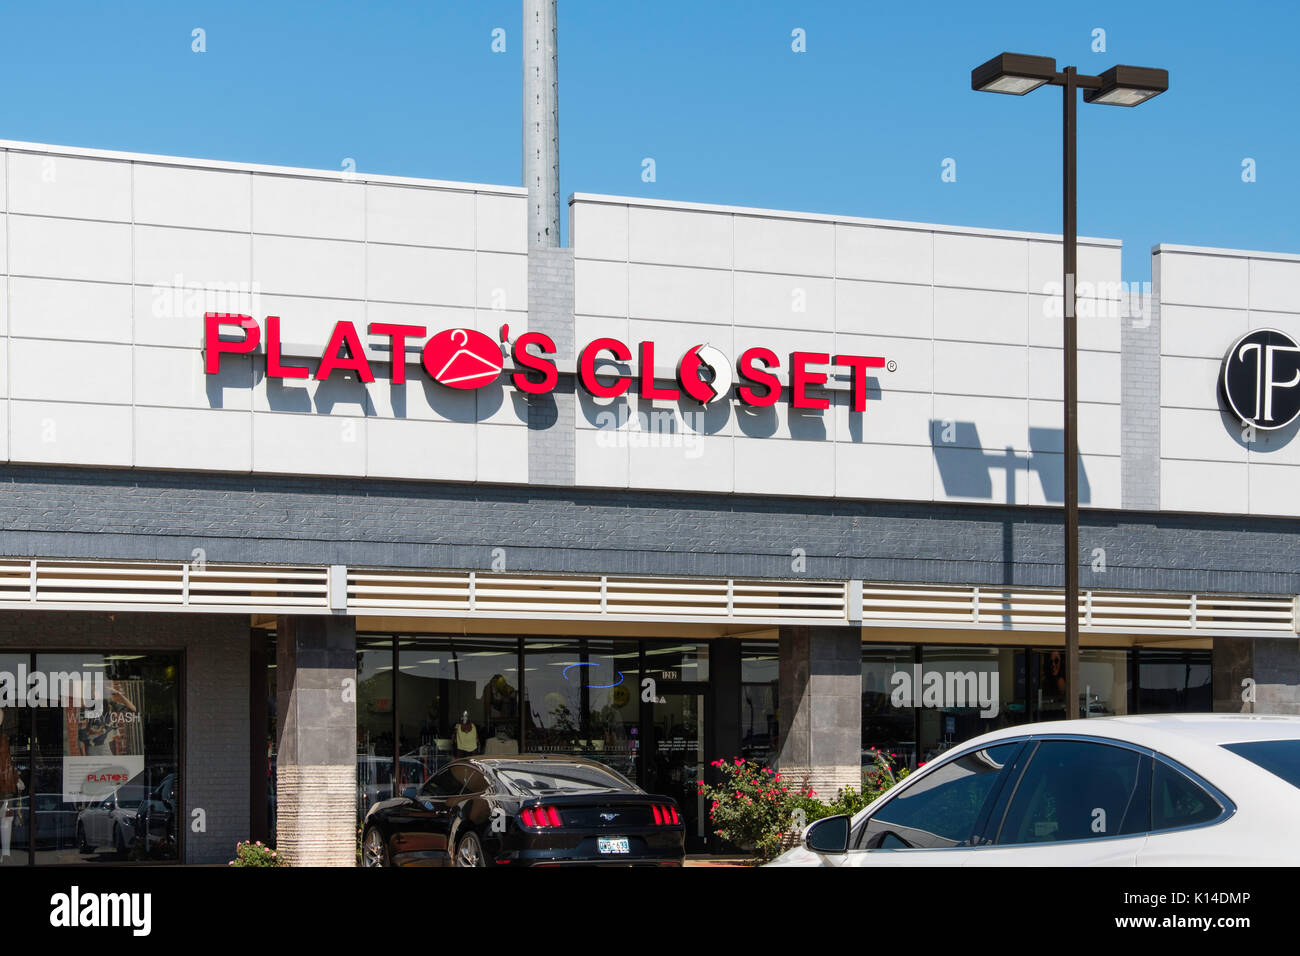 Plato's Closet compra vende ropa suavemente para adolescentes y 26 algo los niños y las niñas. Escaparate de exterior, Norman, Oklahoma, Estados Unidos Fotografía stock Alamy